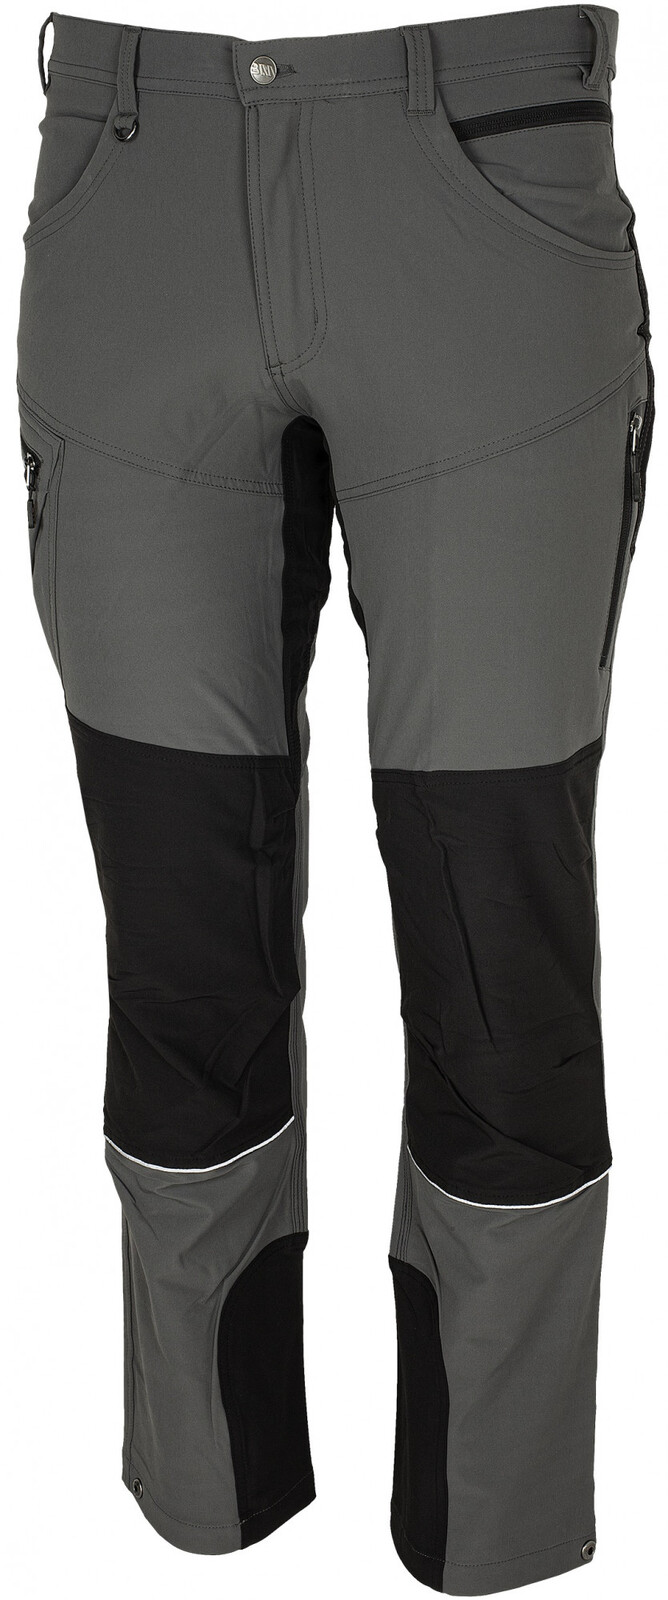 Pánske strečové nohavice Bennon Fobos - veľkosť: 60, farba: sivá/čierna